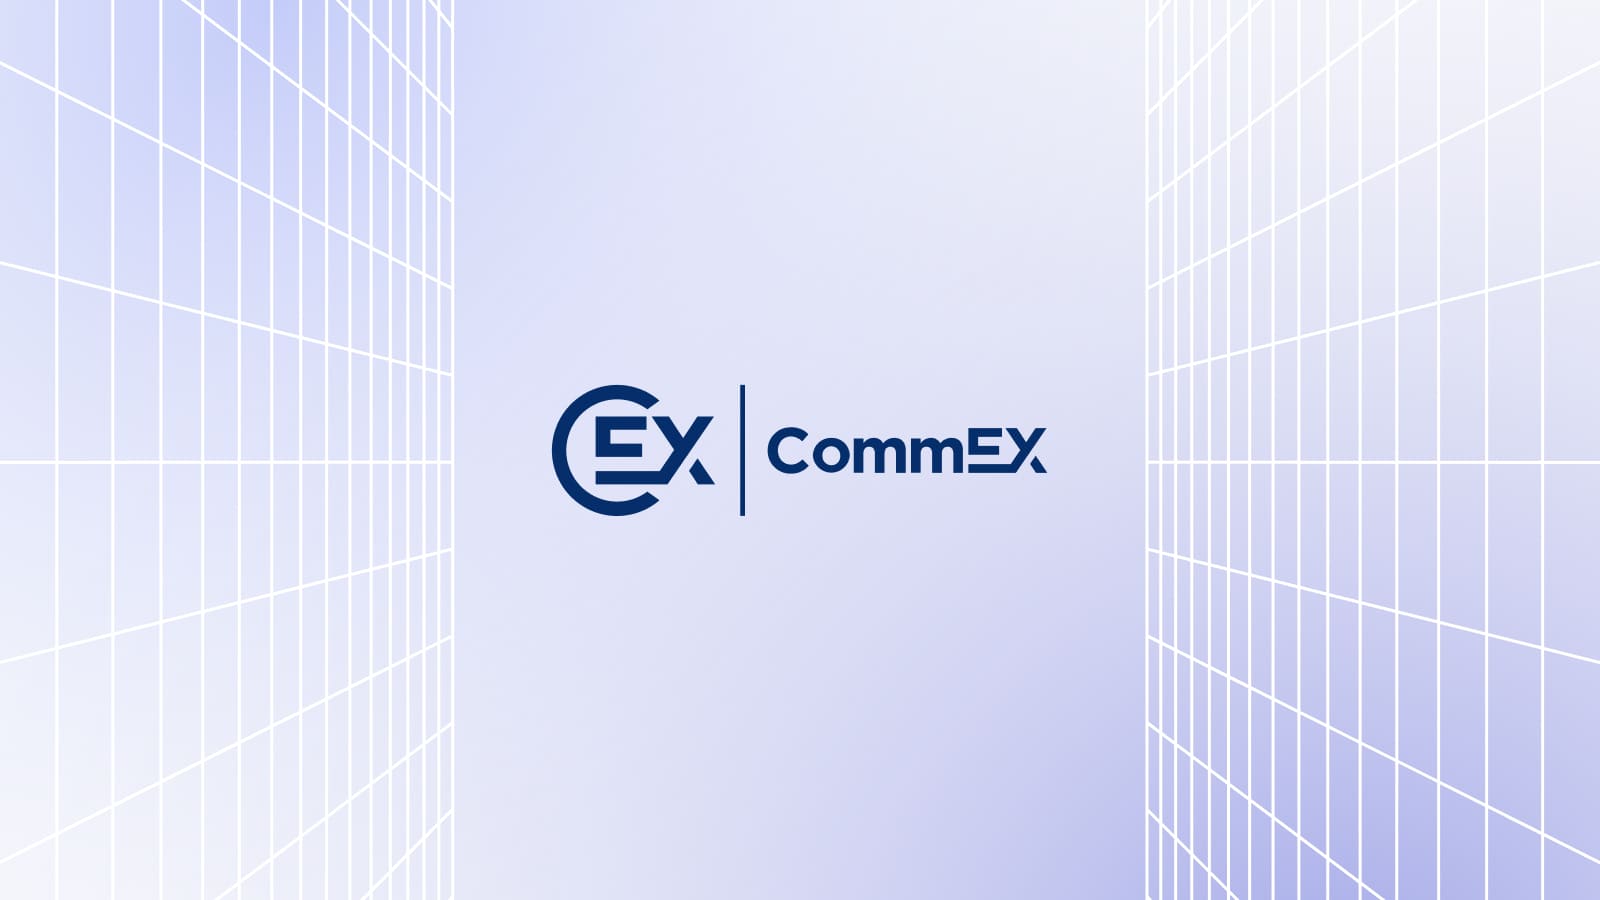 Компания CommEX, ставшая заменой Binance, открылась за сутки до заявления об уходе криптобиржи.